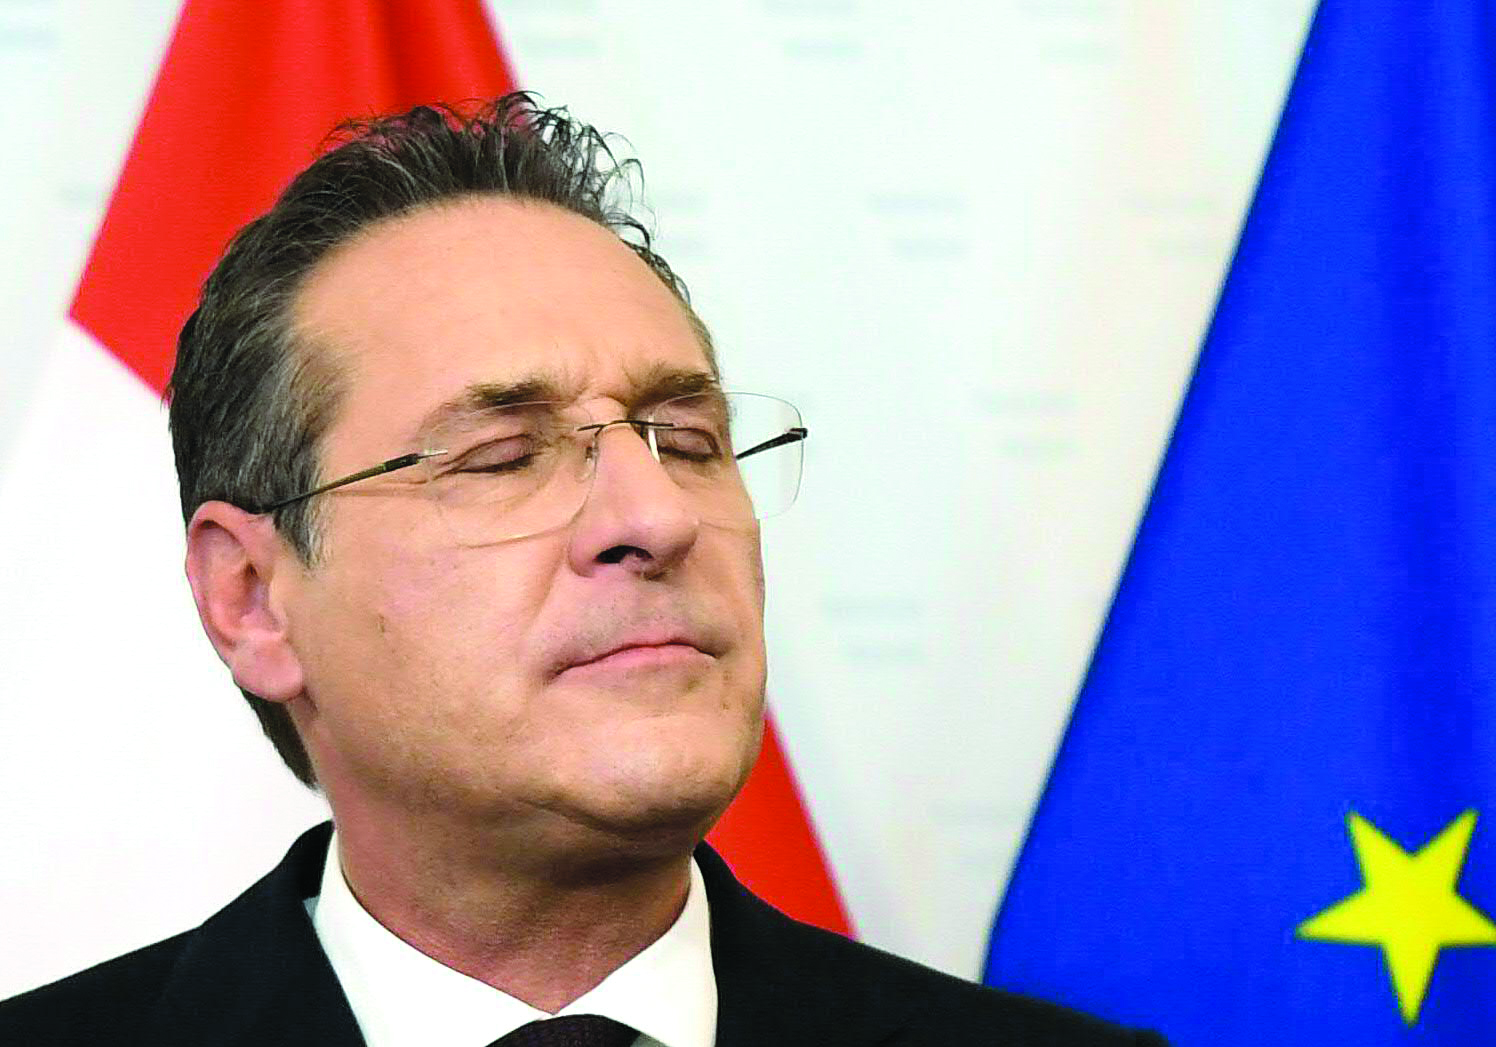 Escândalo leva a queda de governo austríaco e trama a extrema-direita